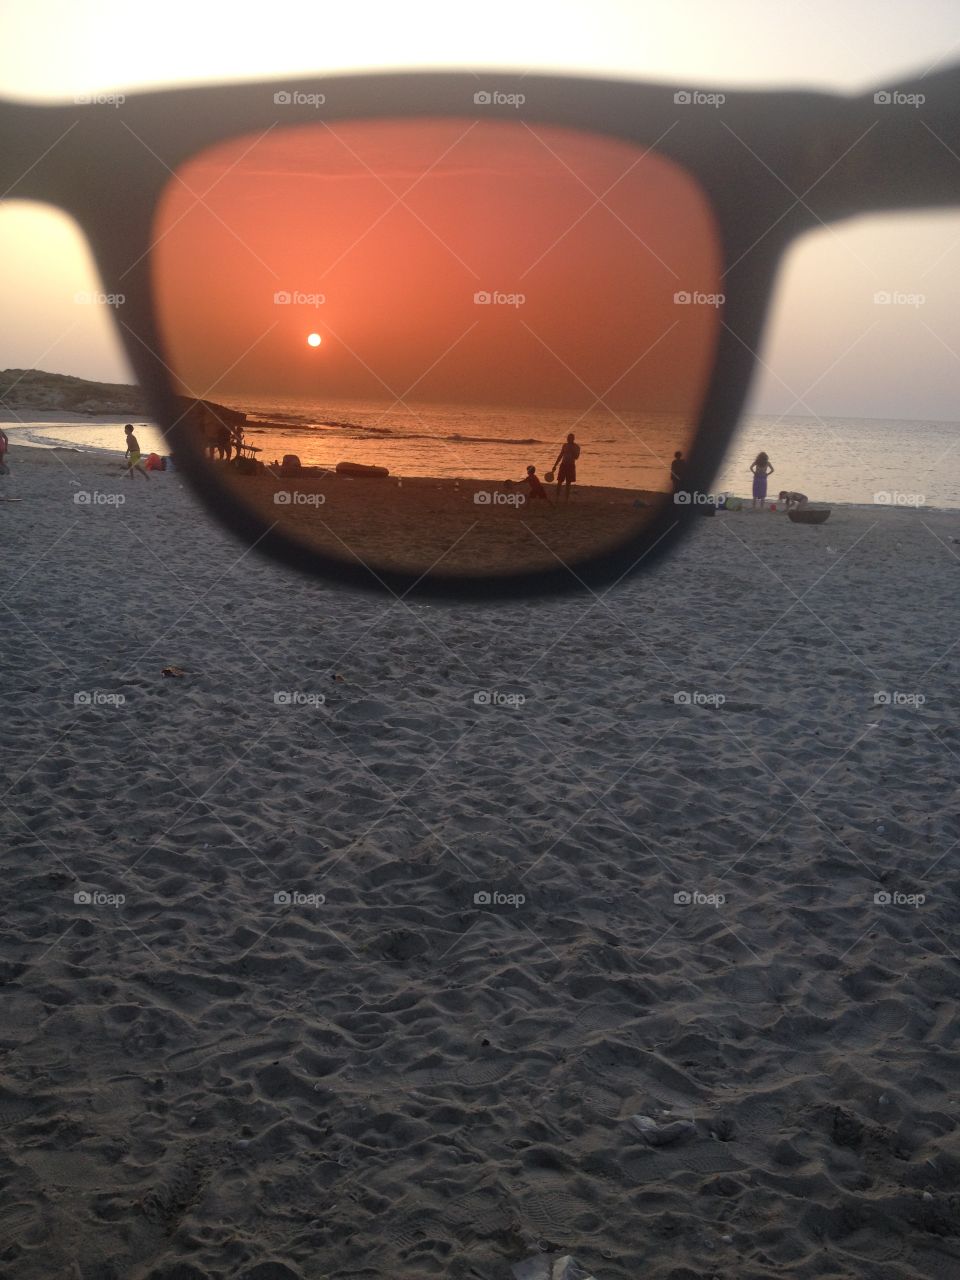 Sea via sunglasses . Haifa beach via sunglasses 